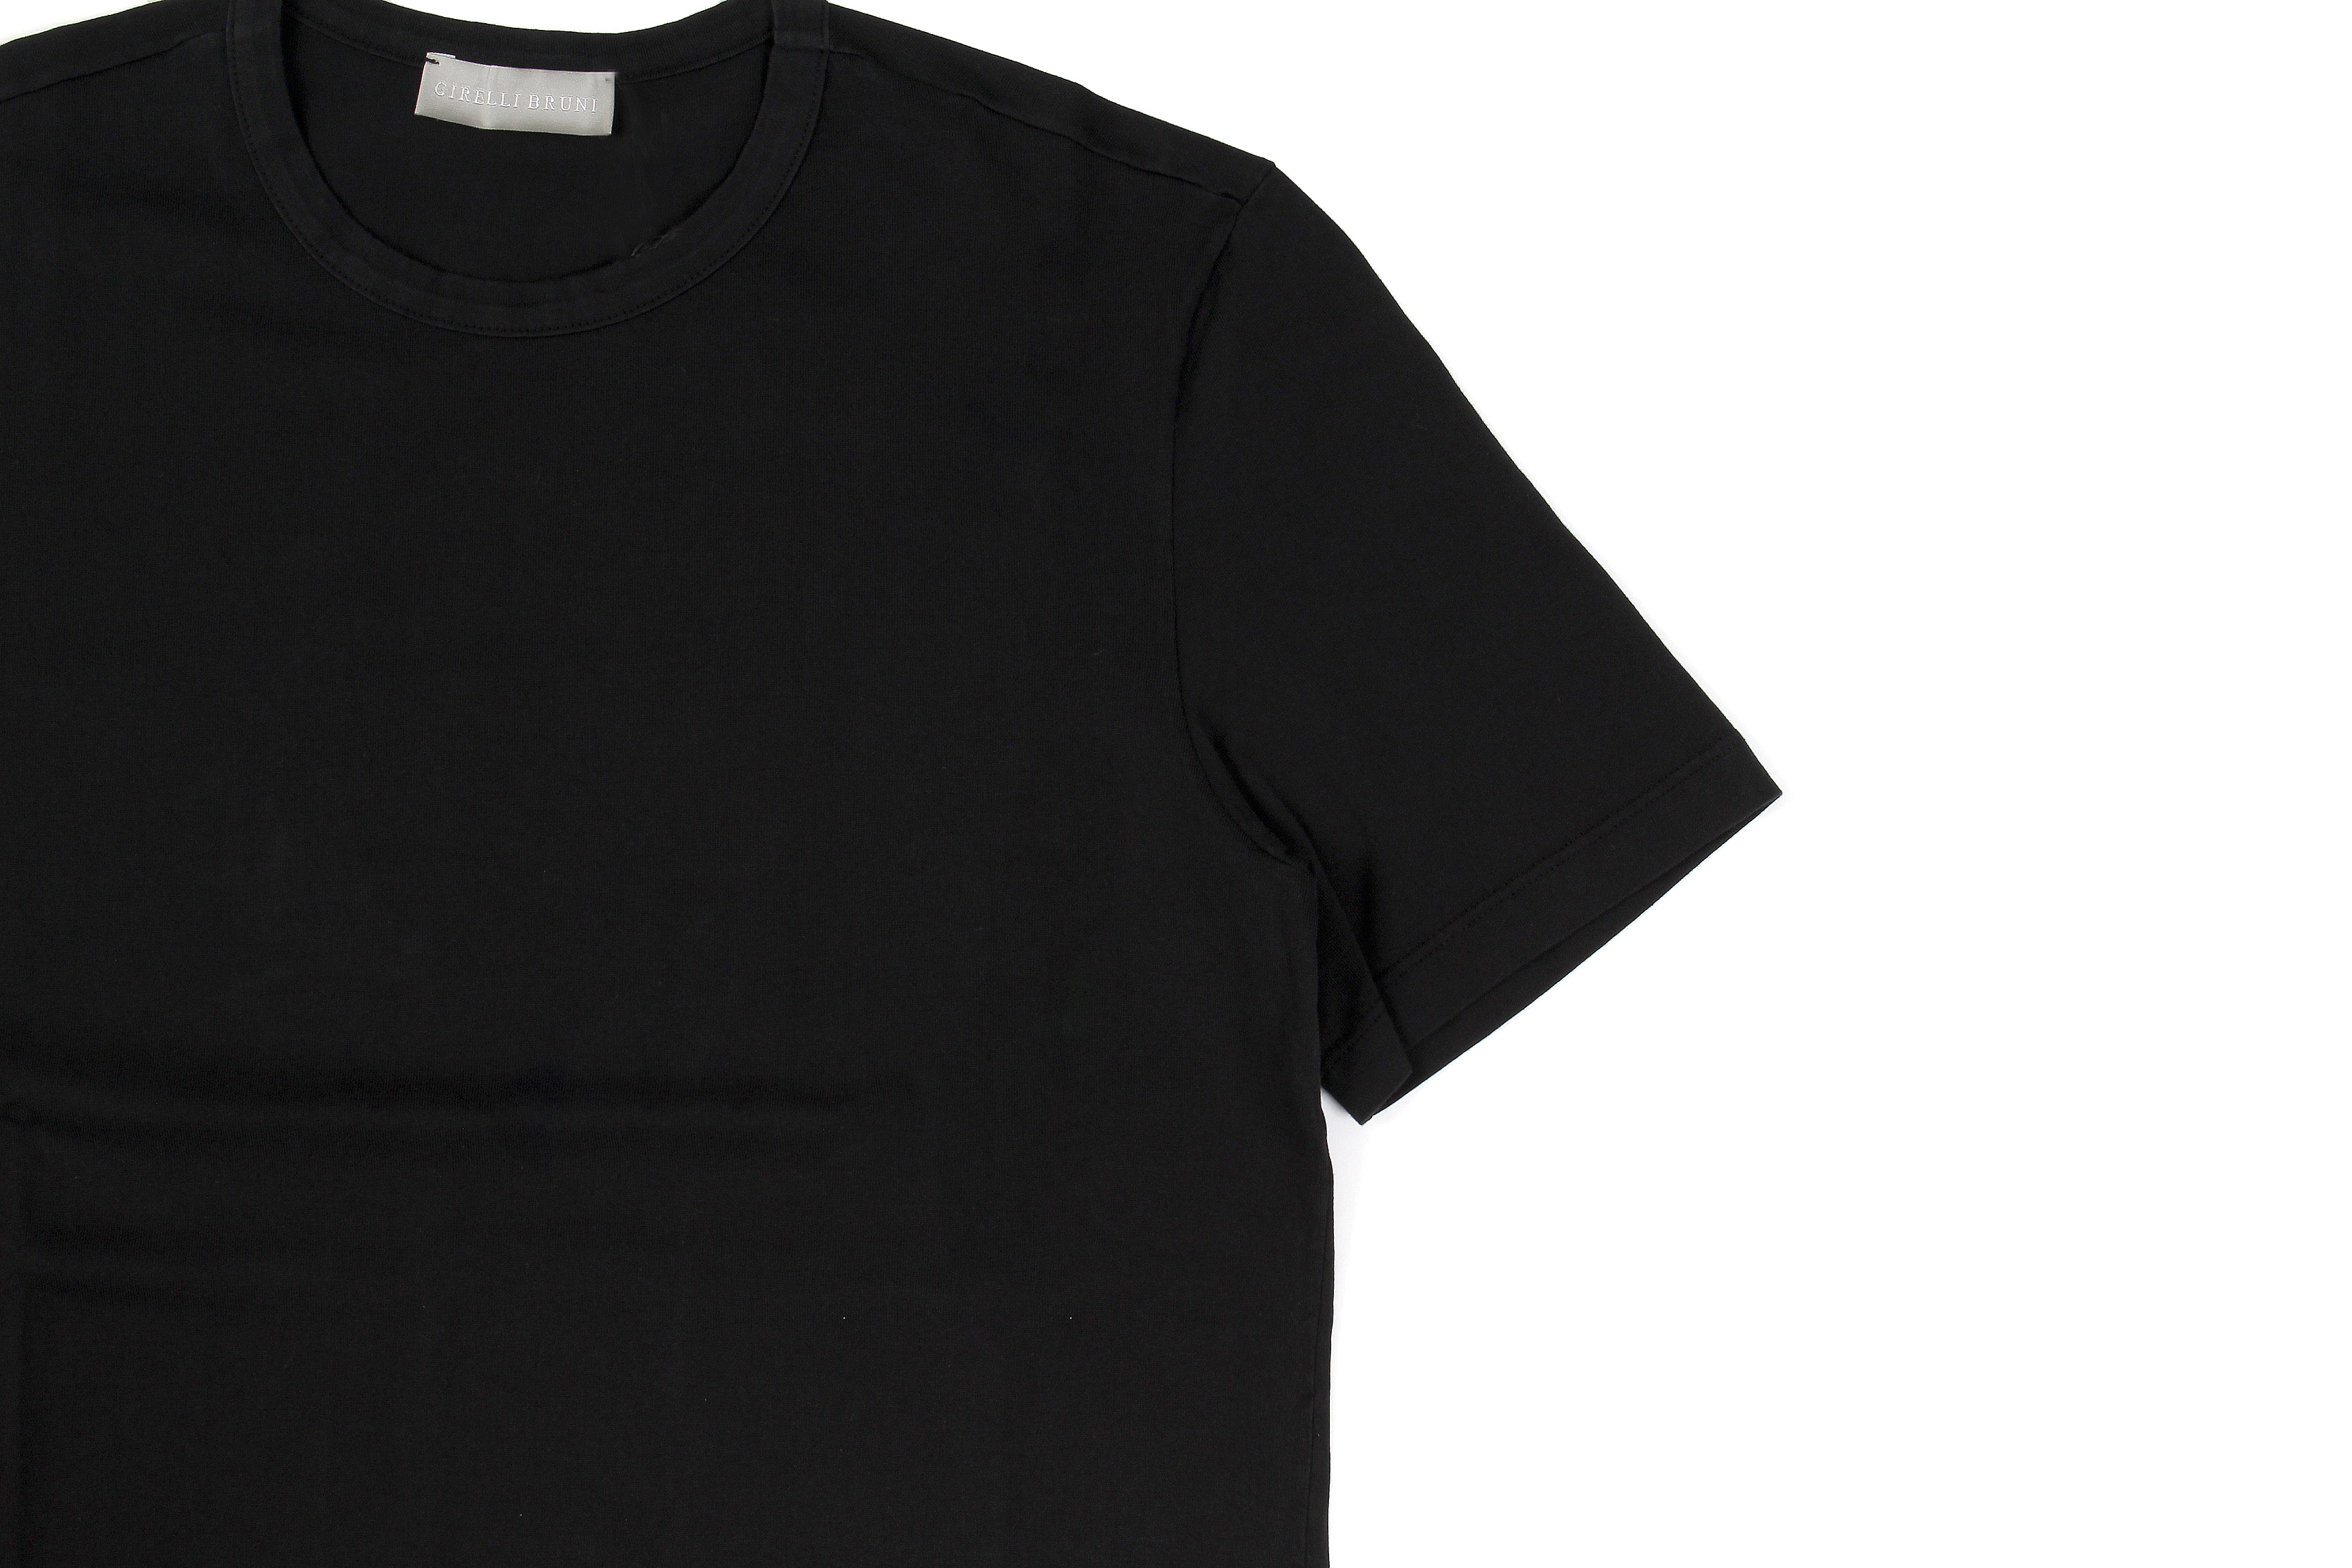 Girelli Bruni (ジレリブルーニ) Crew Neck T-shirt (クルーネック Tシャツ) GIZA 60/2 ギザコットン Tシャツ BLACK (ブラック)　made in italy (イタリア製) 2020秋冬新作 愛知 名古屋 Alto e Diritto アルトエデリット